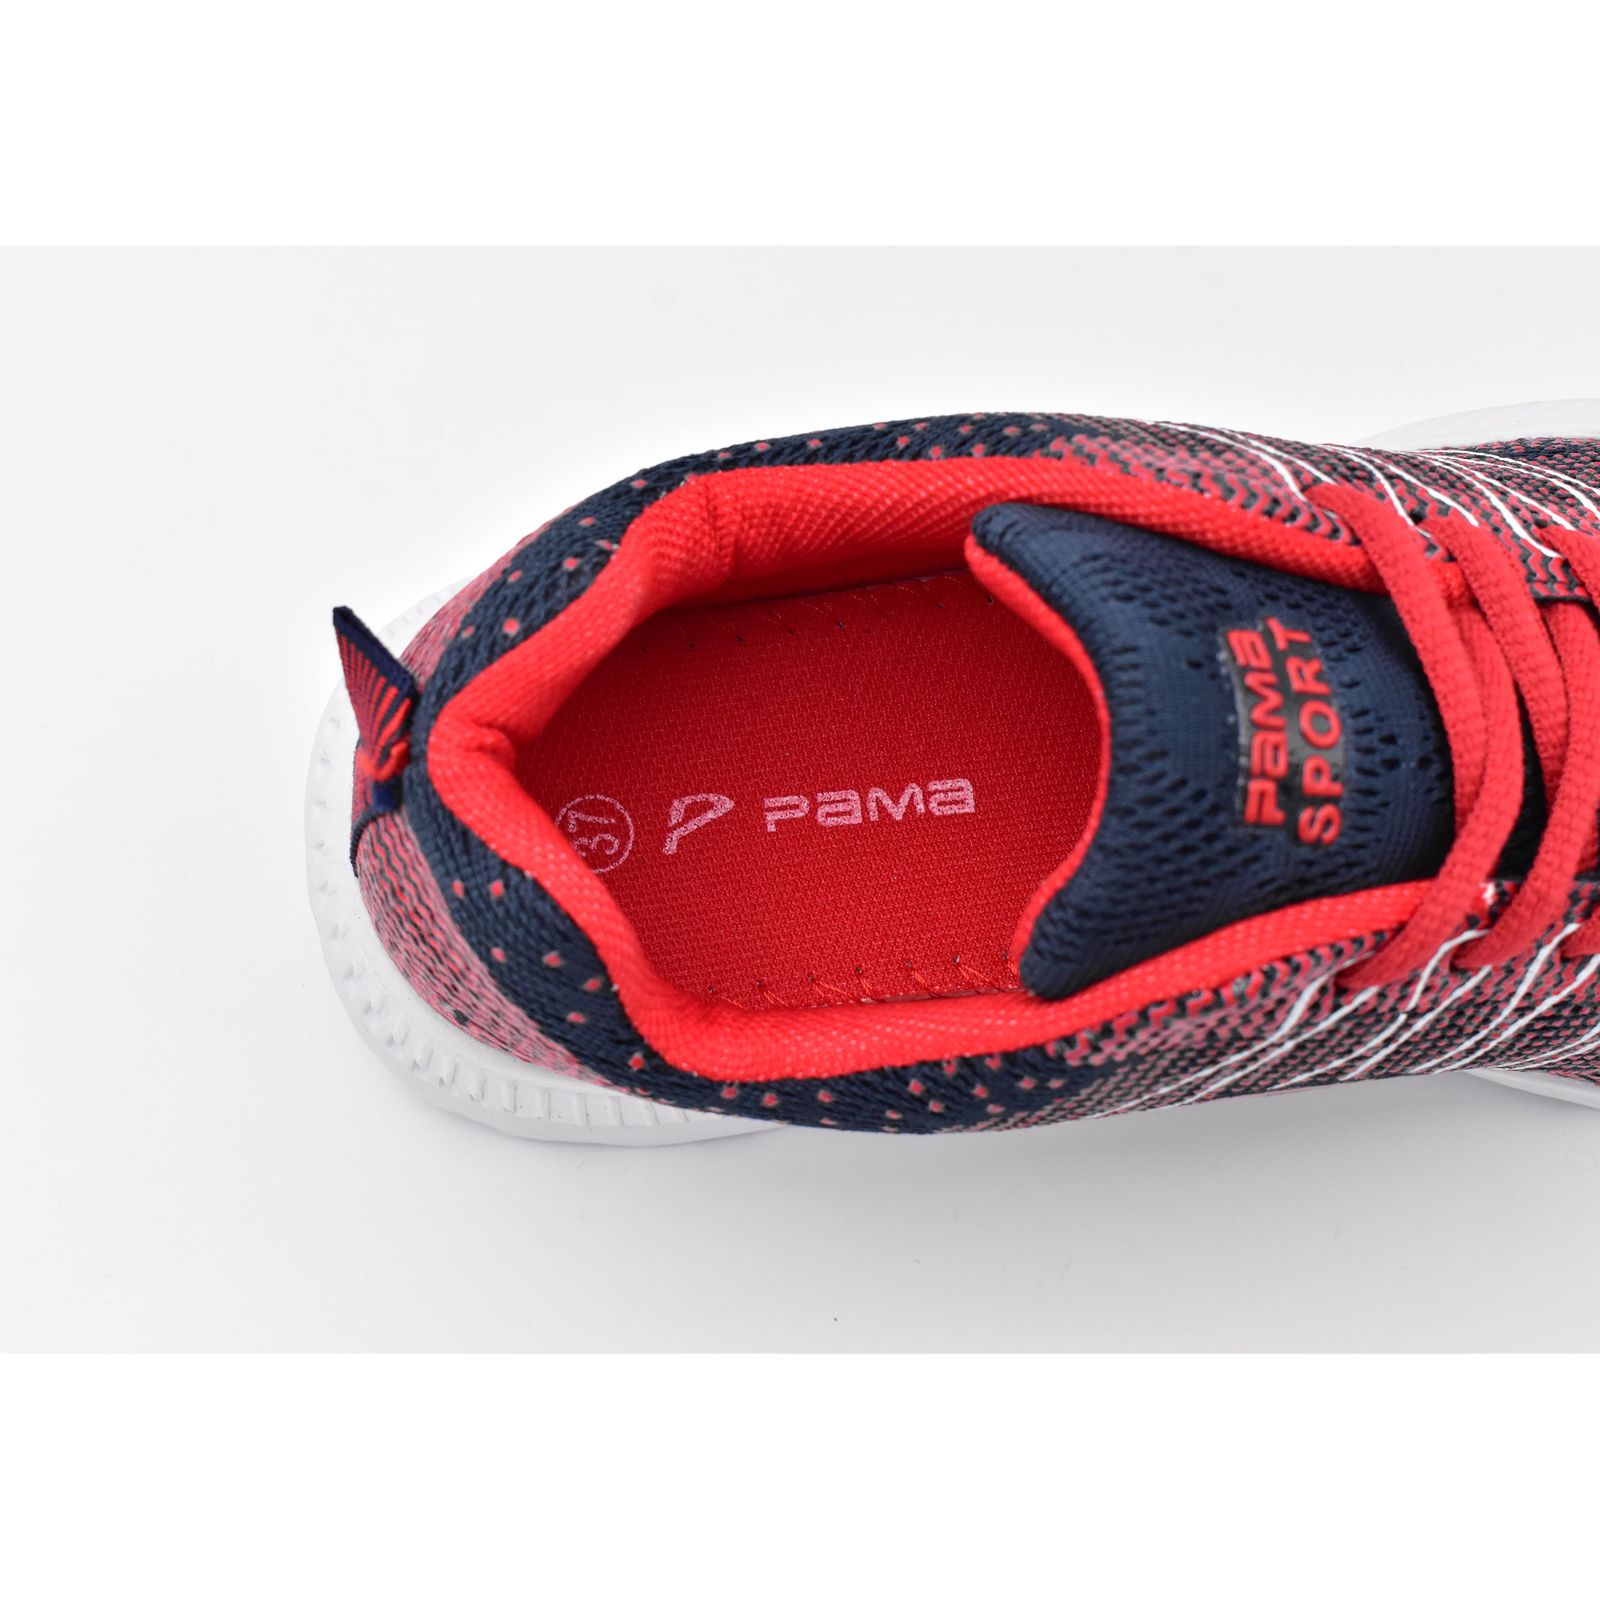 کفش پیاده روی زنانه پاما مدل پلازا کد G1363 -  - 6